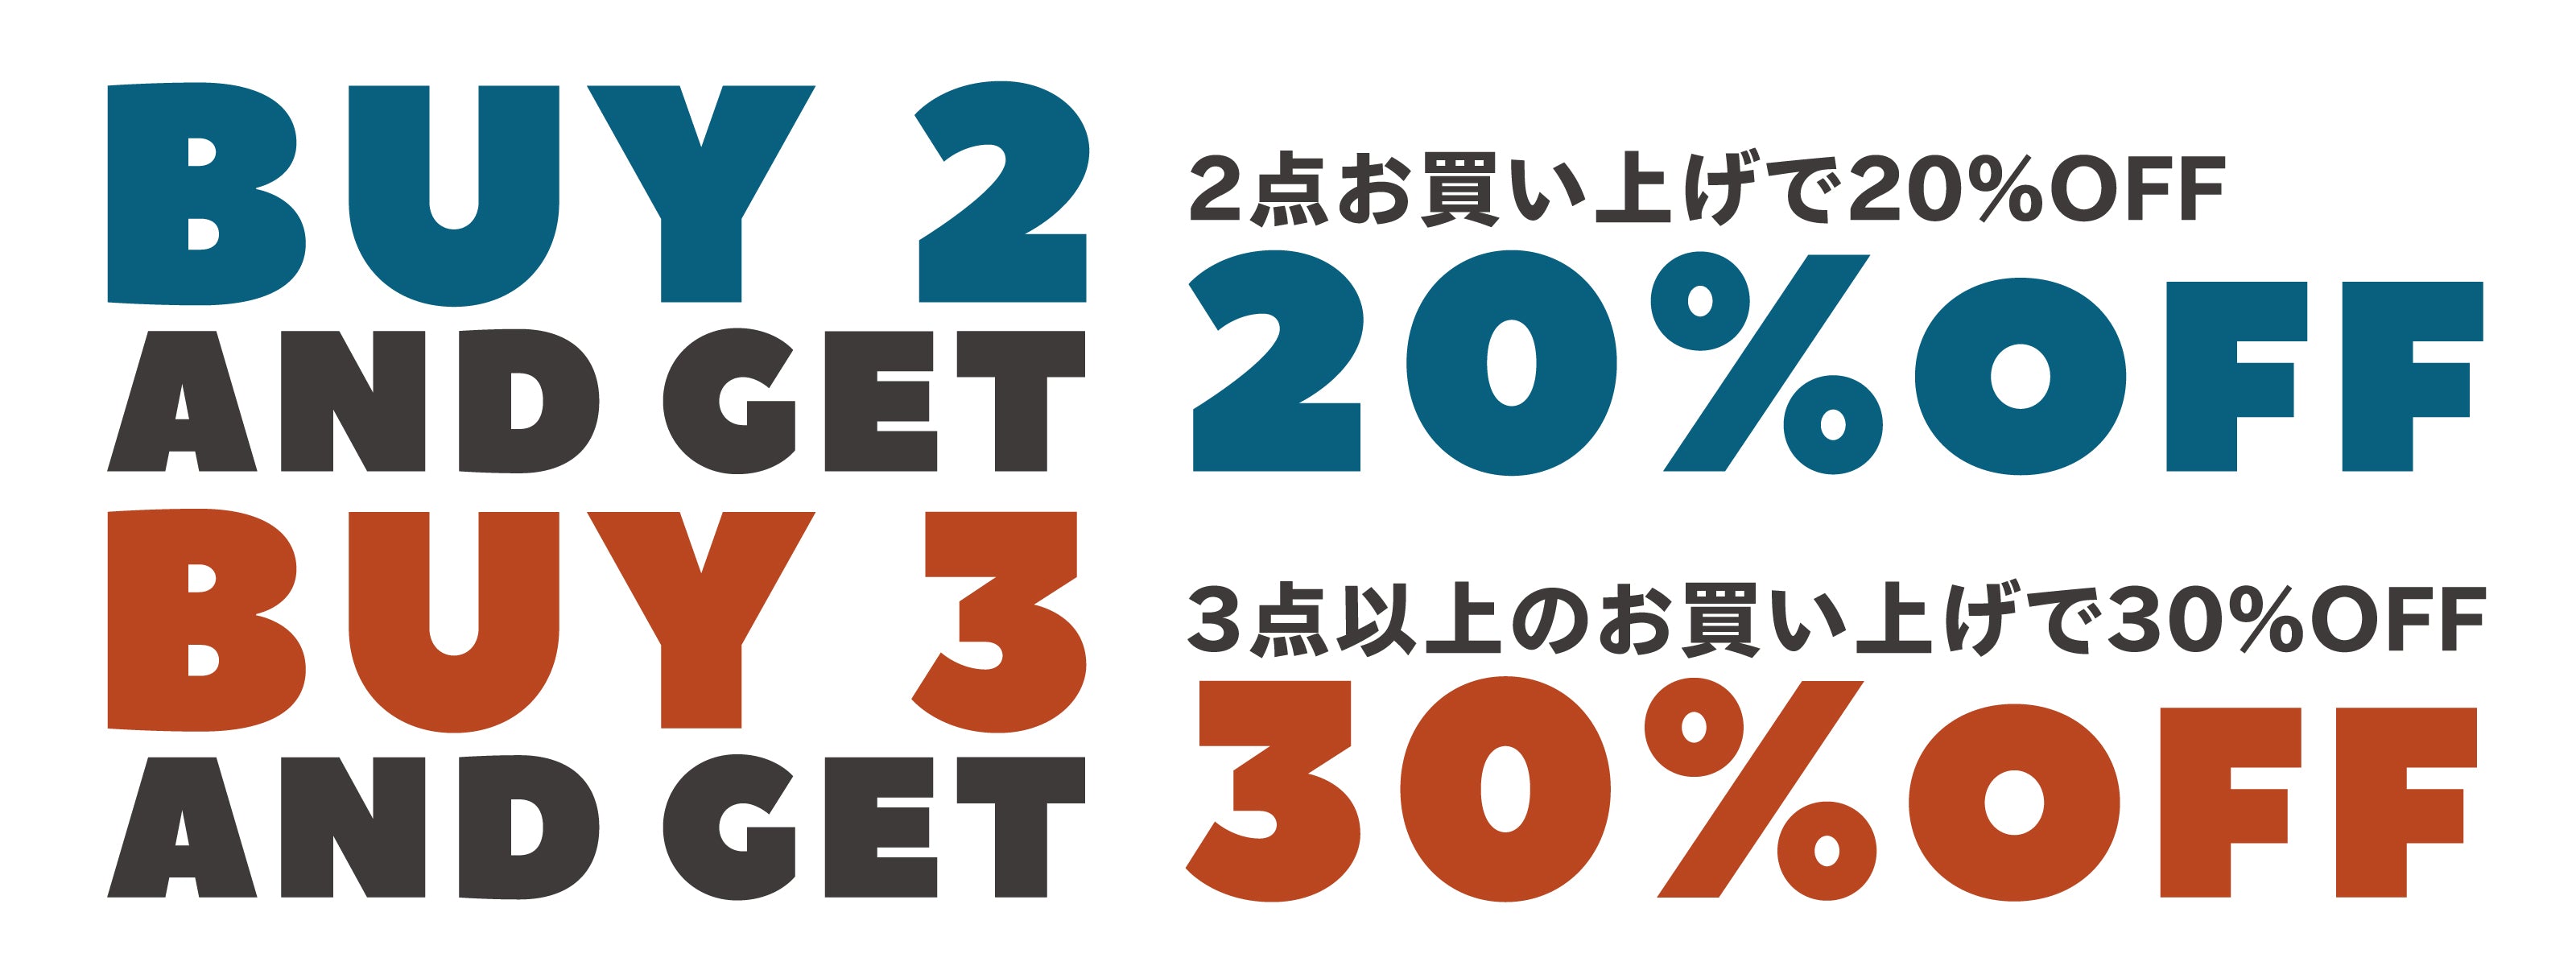 『BUY 2 & GET 20%OFF / BUY 3 & GET 30%OFF』キャンペーン開催のお知らせ